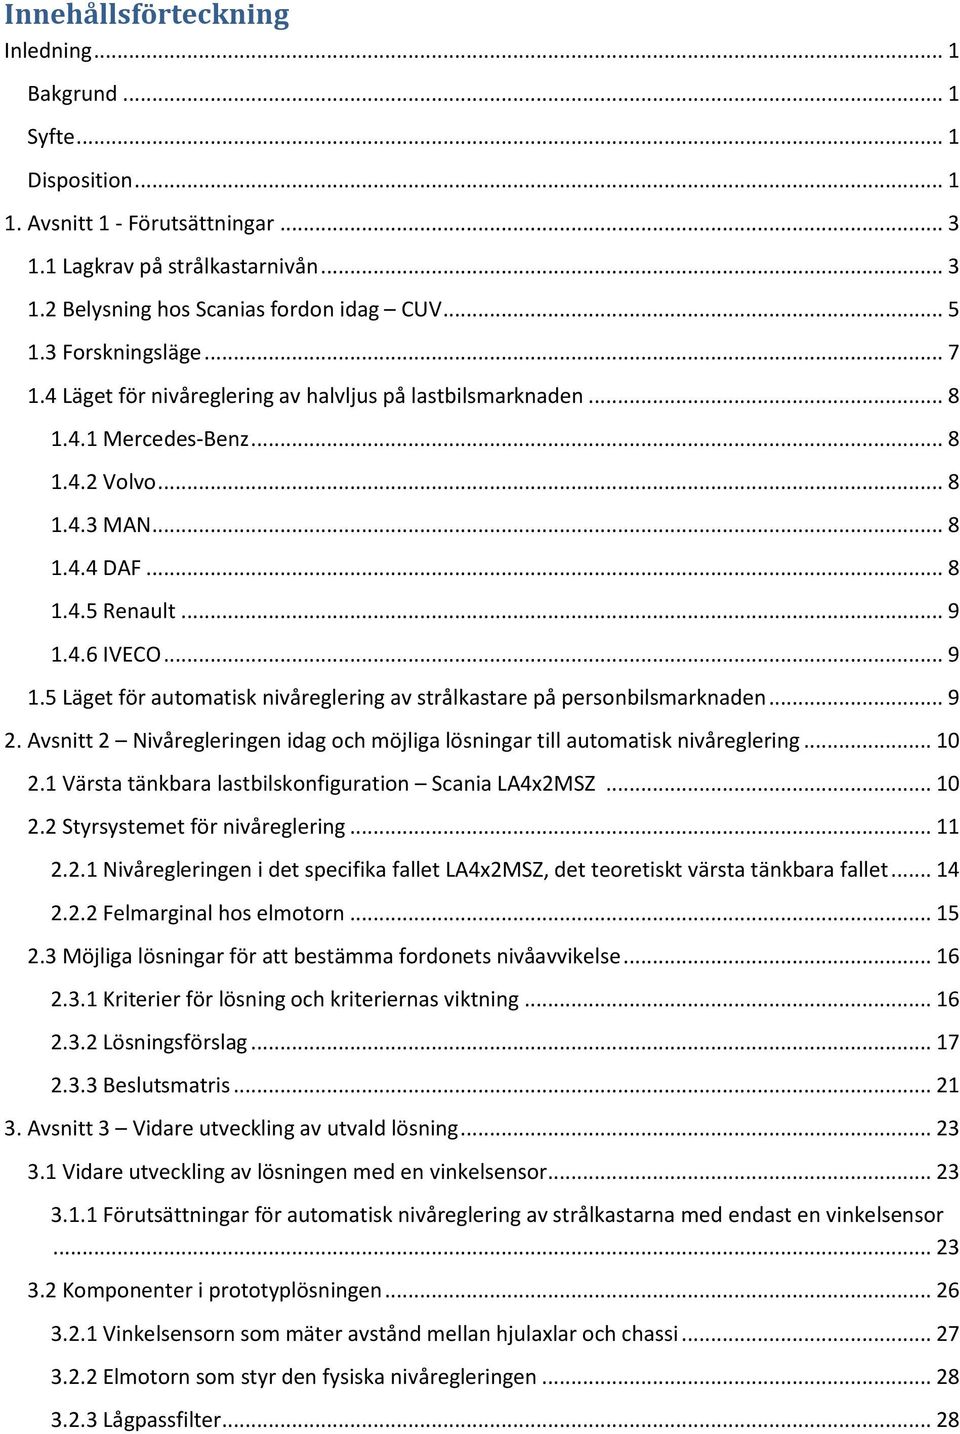 Automatisk nivåreglering av strålkastare - PDF Gratis nedladdning